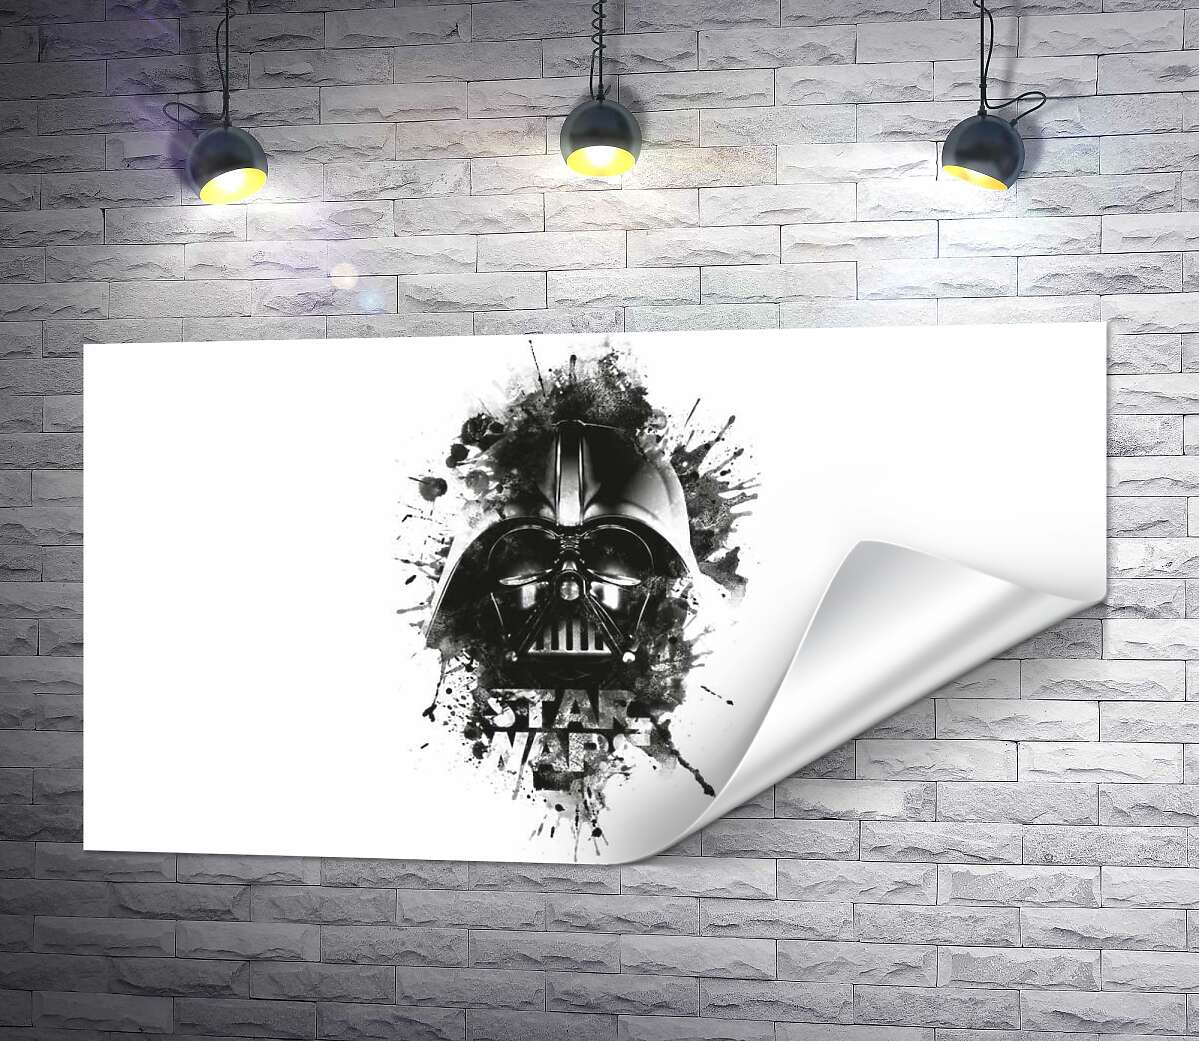 друк Дарт Вейдер (Darth Vader) на постері до фільму "Зоряні війни" (Star Wars)